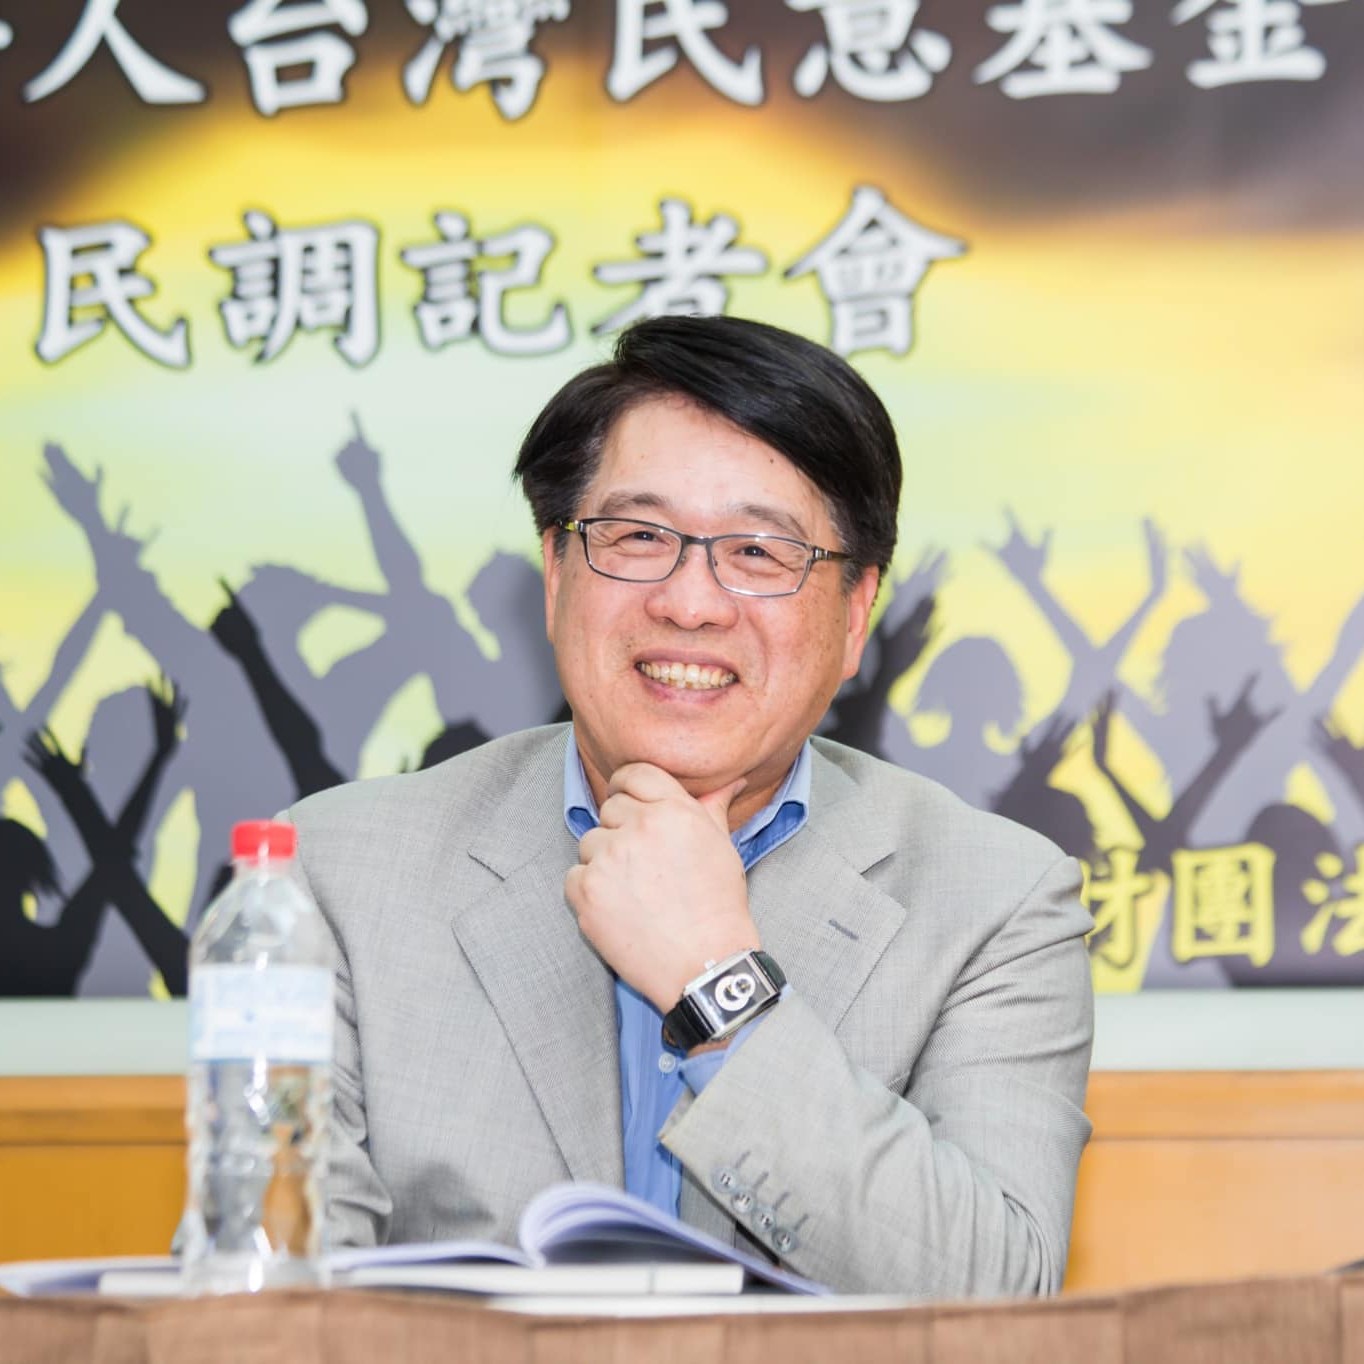 品觀點 | 游盈隆指疫情若無法控制 陳時中將無法參選台北市長 | 政治 - 台北郵報 | The Taipei Post